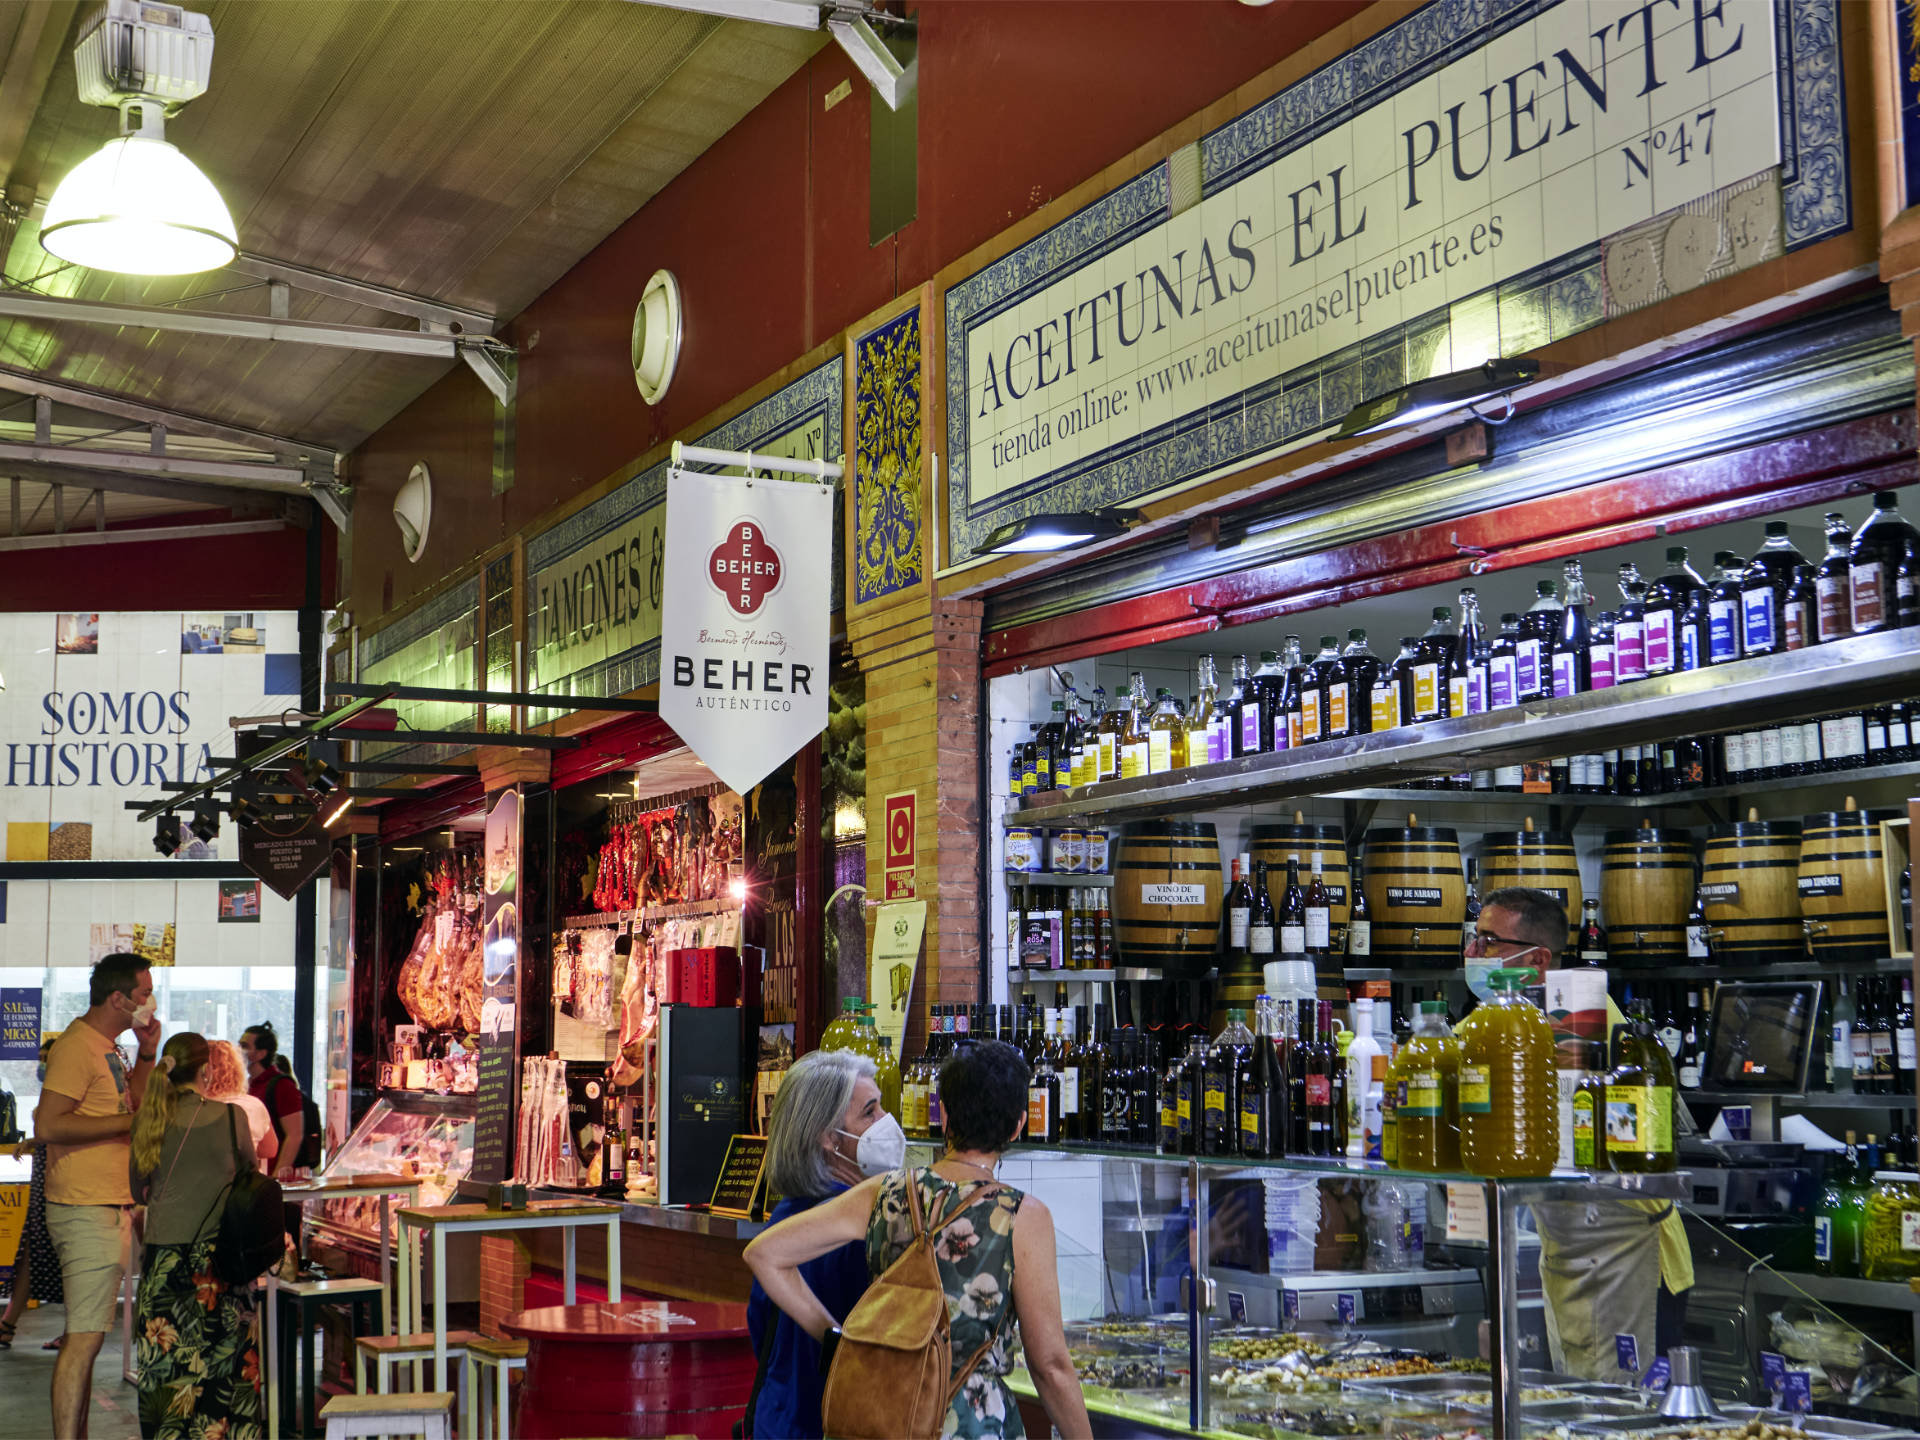 Der tienda Aceitunas del Puente im Mercado de Triana Sevilla.